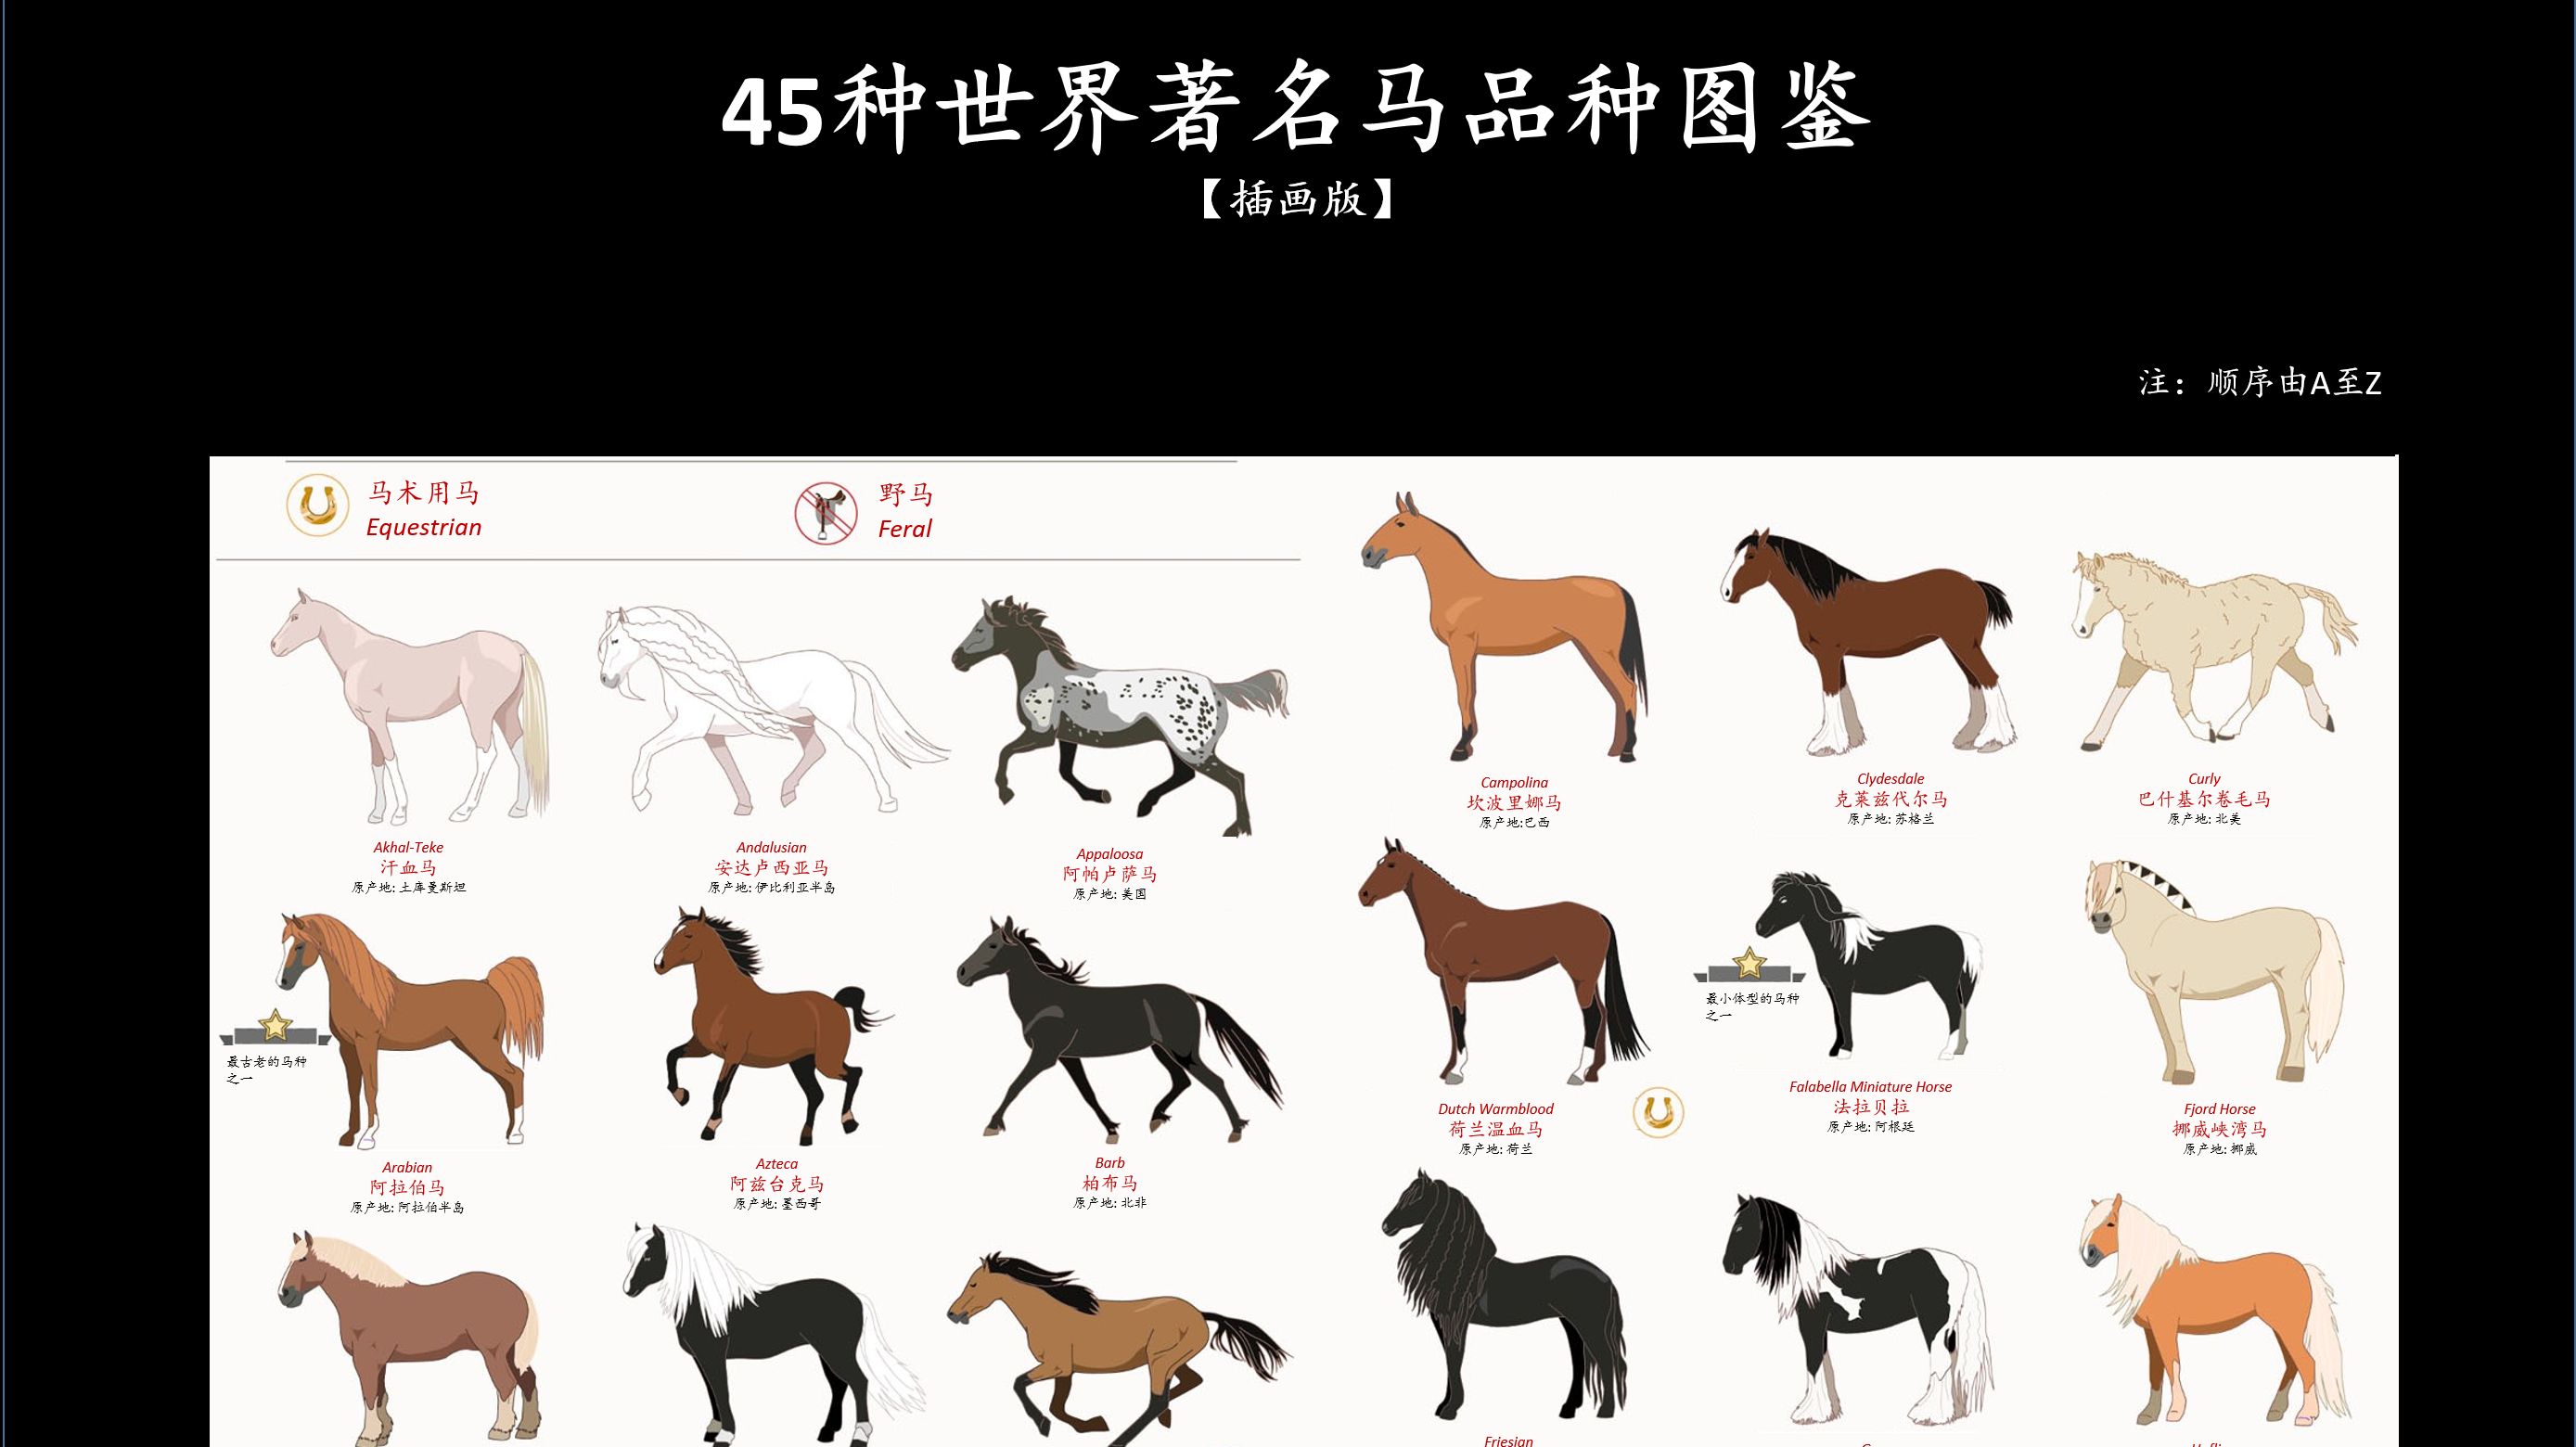 45种世界著名马品种图鉴 插画版 哔哩哔哩